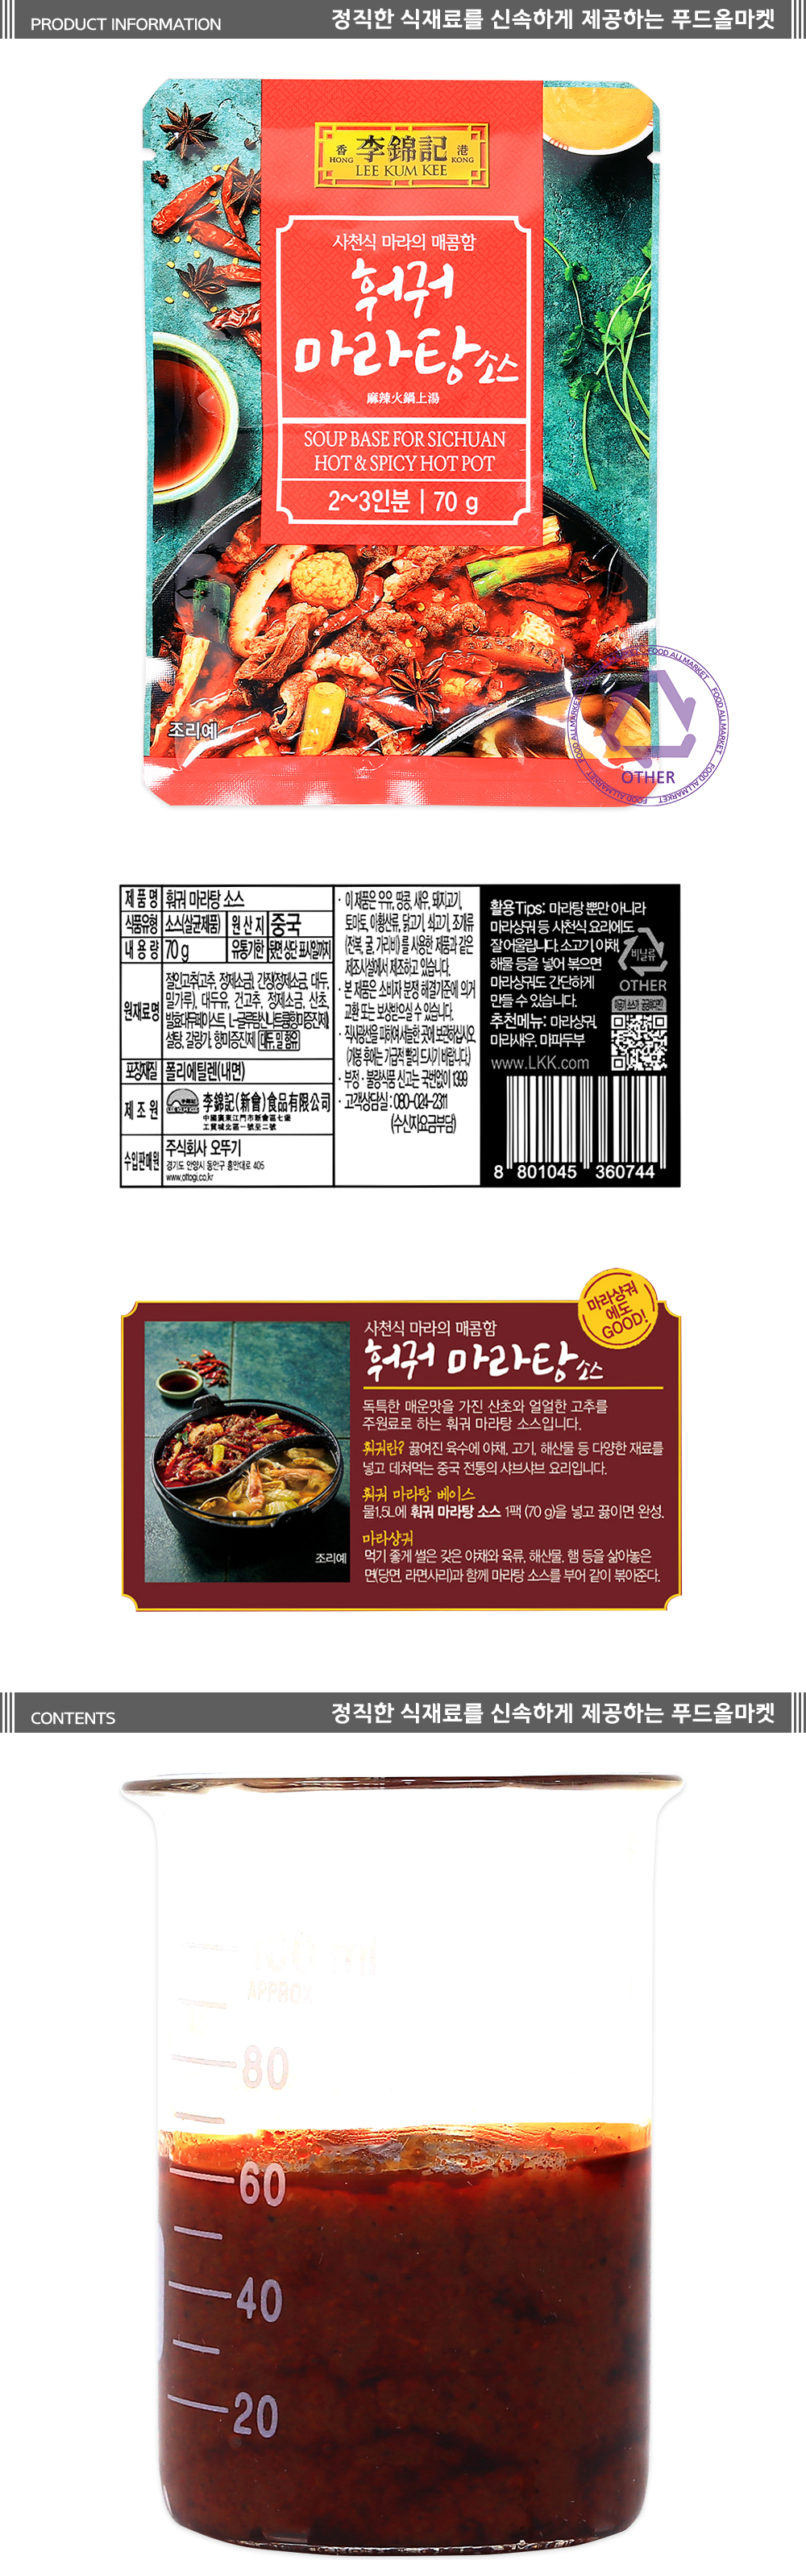 韓國食品-[이금기] 훠궈 마라탕소스 70g